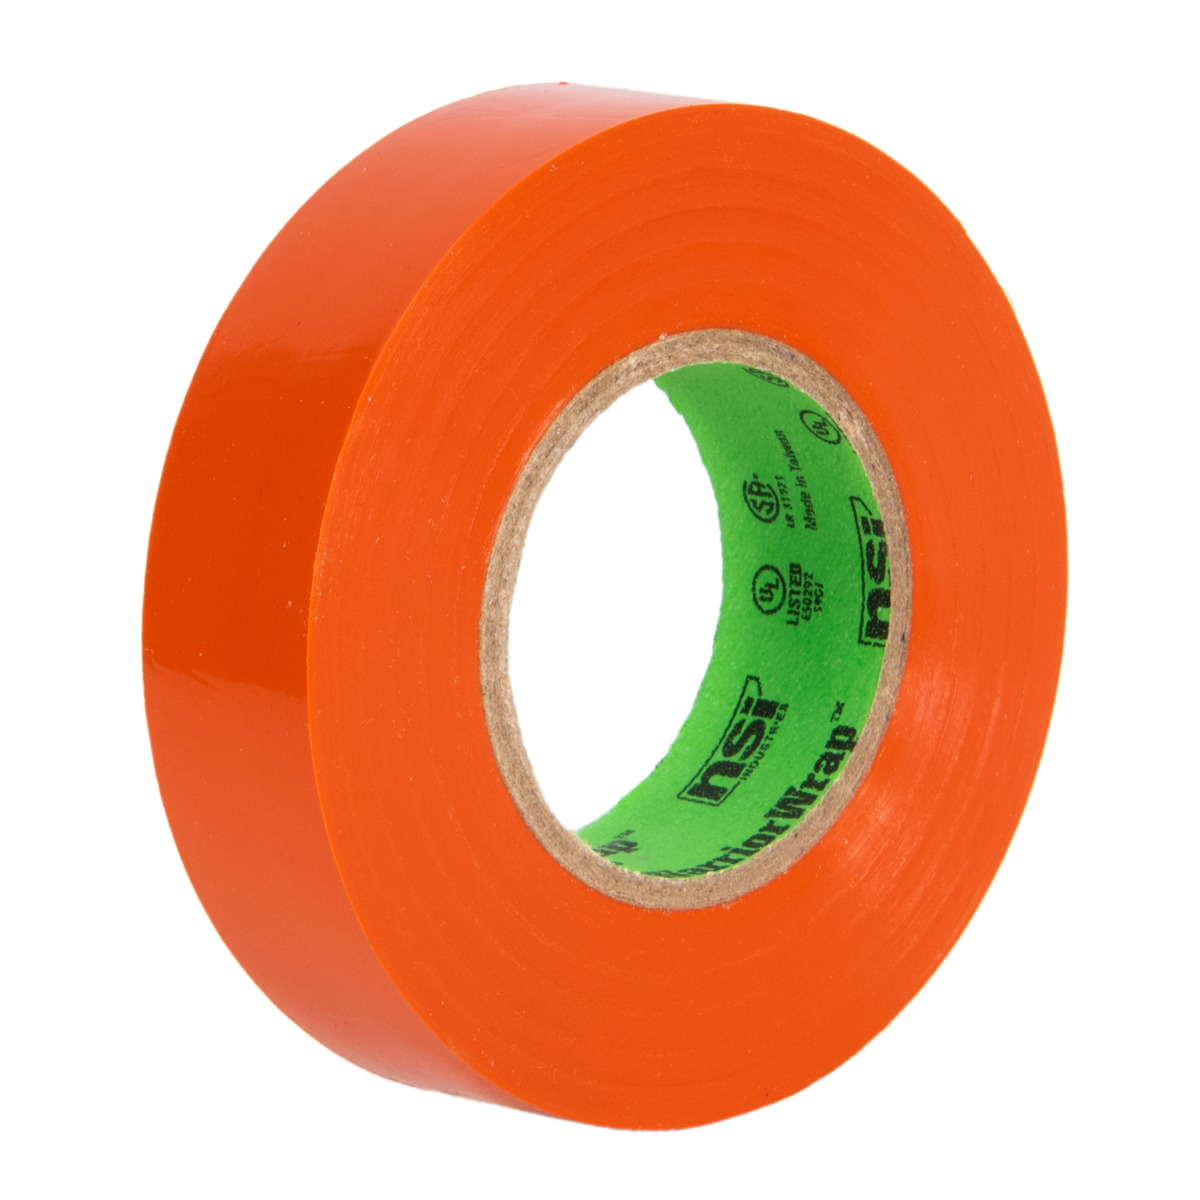 satelliet aankunnen Tot ziens General Use Orange Vinyl Electrical Tape, 7mil, 60ft Long - NSI Industries